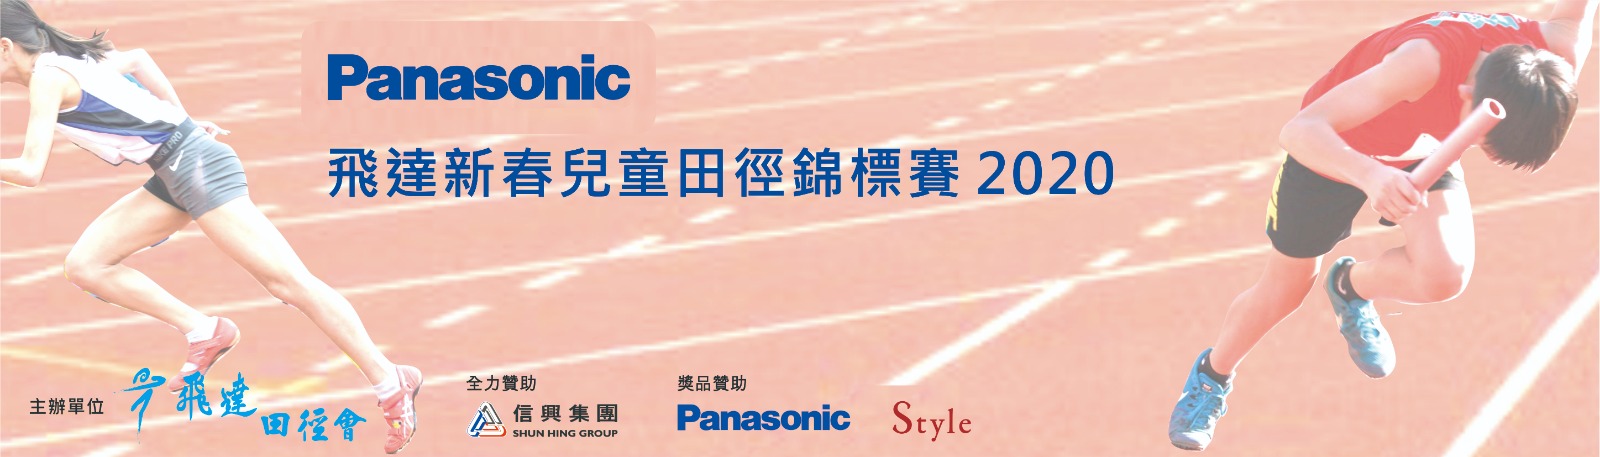 【Panasonic飛達新春兒童田徑錦標賽2020】 成績公佈